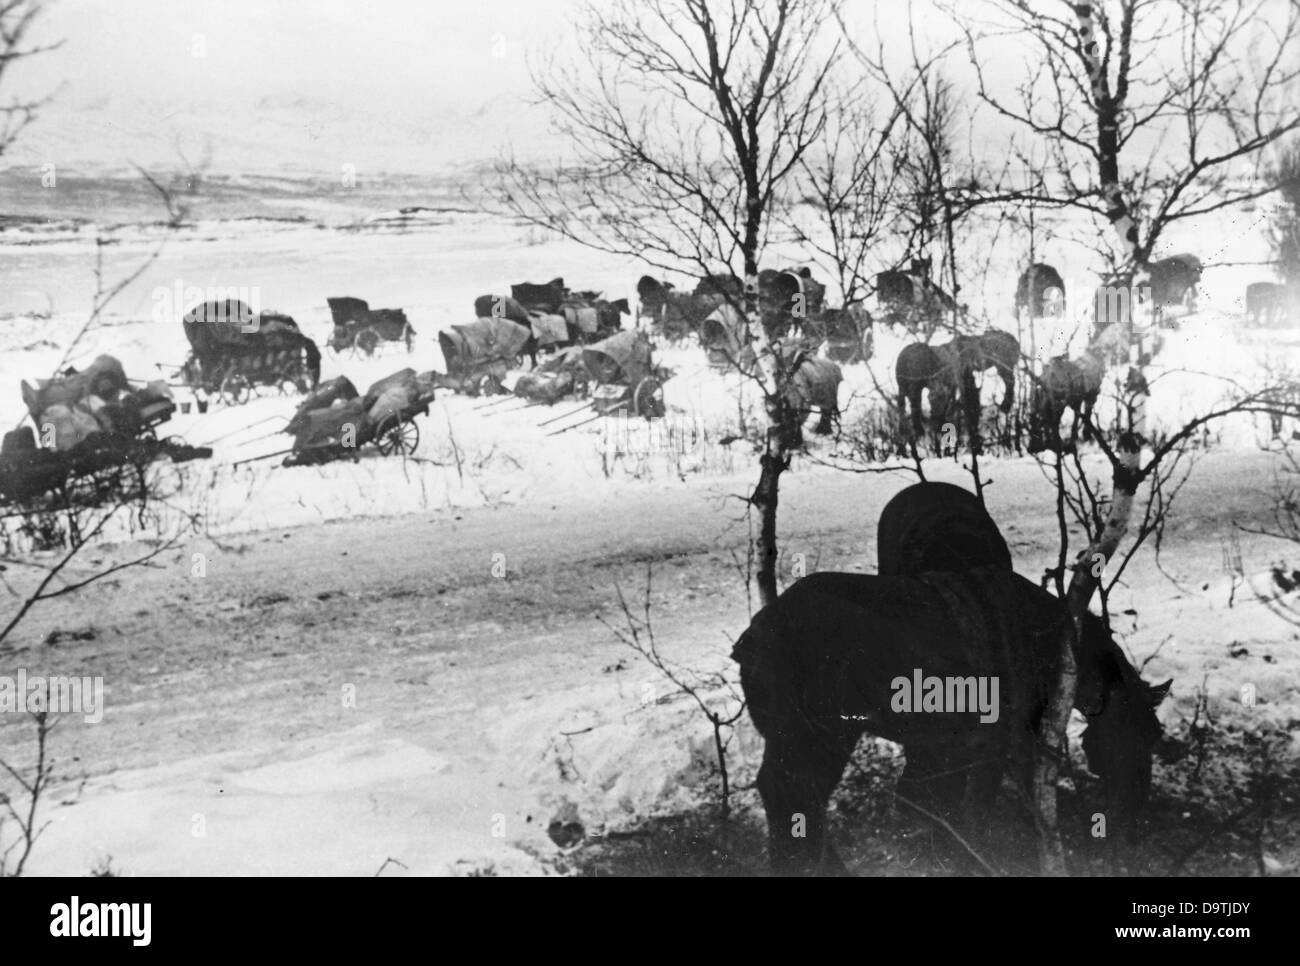 La propagande nazie! Au dos de l'image se lit: 'Bivouac dans l'hiver polaire. Les hommes d'infanterie de montagne ont emménagé dans un bivouac à côté de la rue lors de leur marche de l'avant en Laponie au nord de la Norvège. Les hommes et les animaux se détendent et regagnent leur force. » Image du Front de l'est, 27 décembre 1944. L'attaque contre l'Union soviétique par le Reich allemand a été acceptée en juillet 1940 et préparée comme l'« opération Barbarossa » depuis décembre 1940. Le 22 juin 1941, l'invasion de la Wehrmacht allemande commence. Fotoarchiv für Zeitgeschichte Banque D'Images